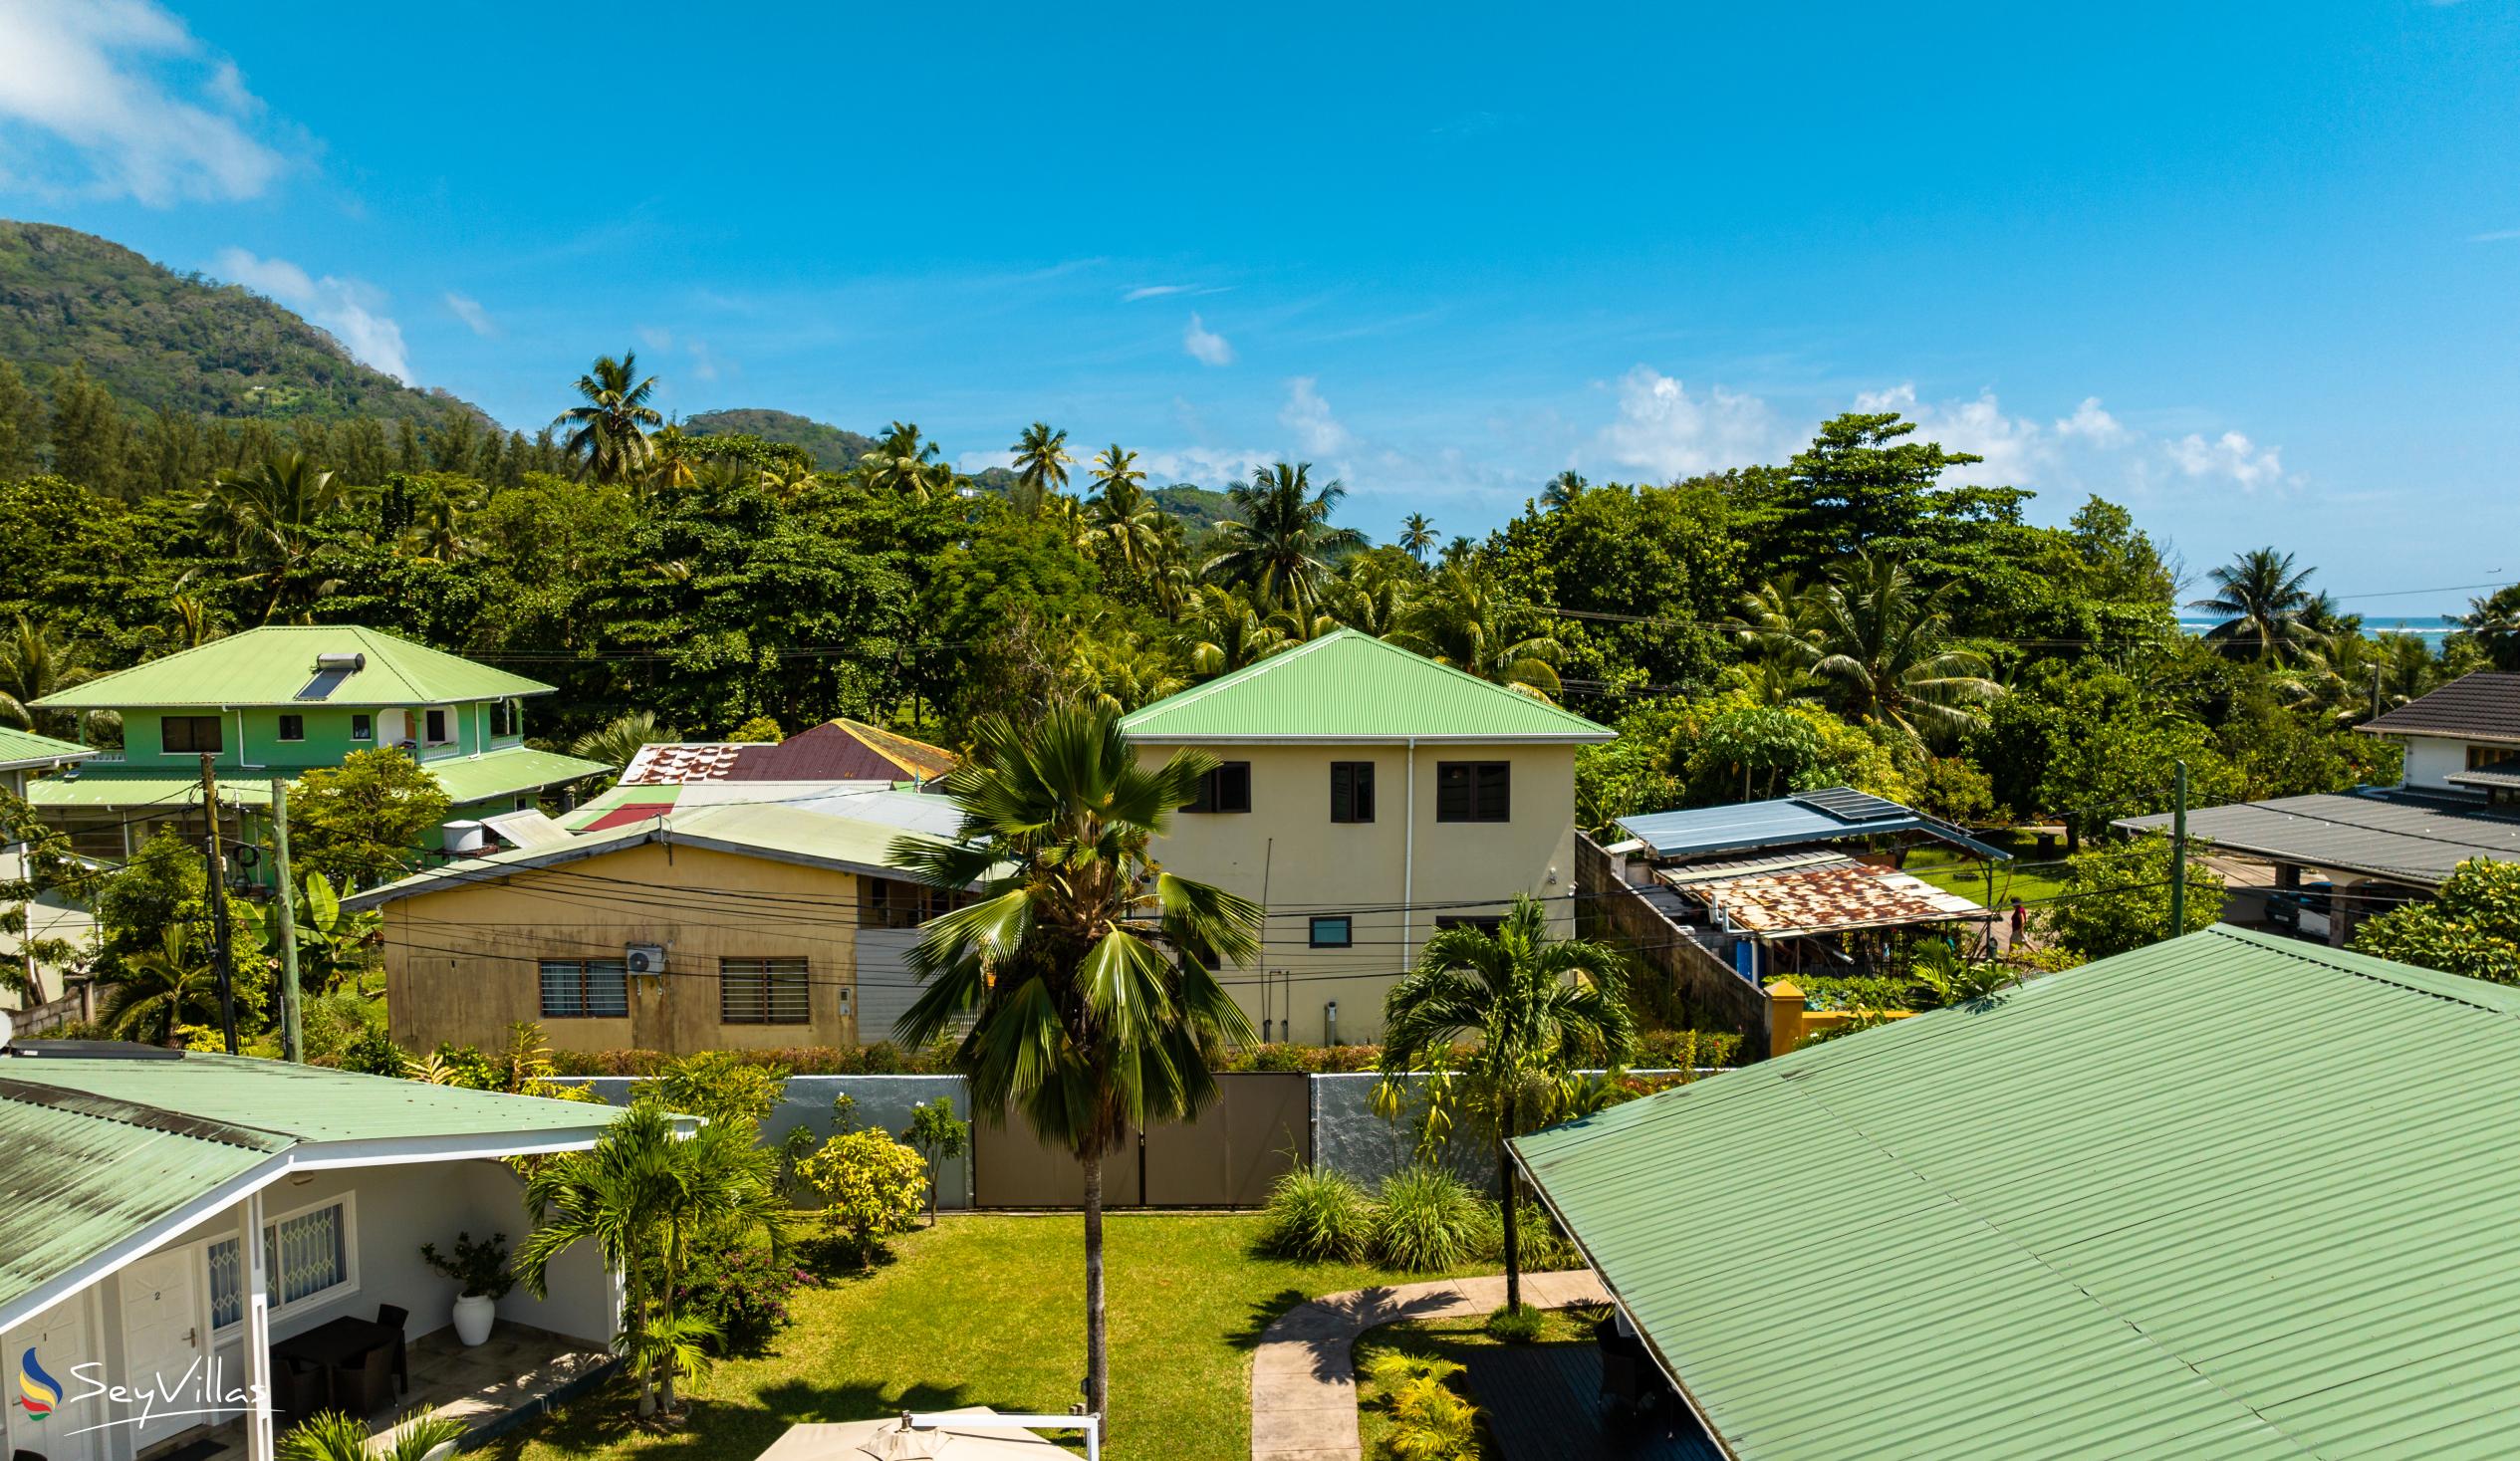 Foto 91: Hotel La Roussette - Posizione - Mahé (Seychelles)